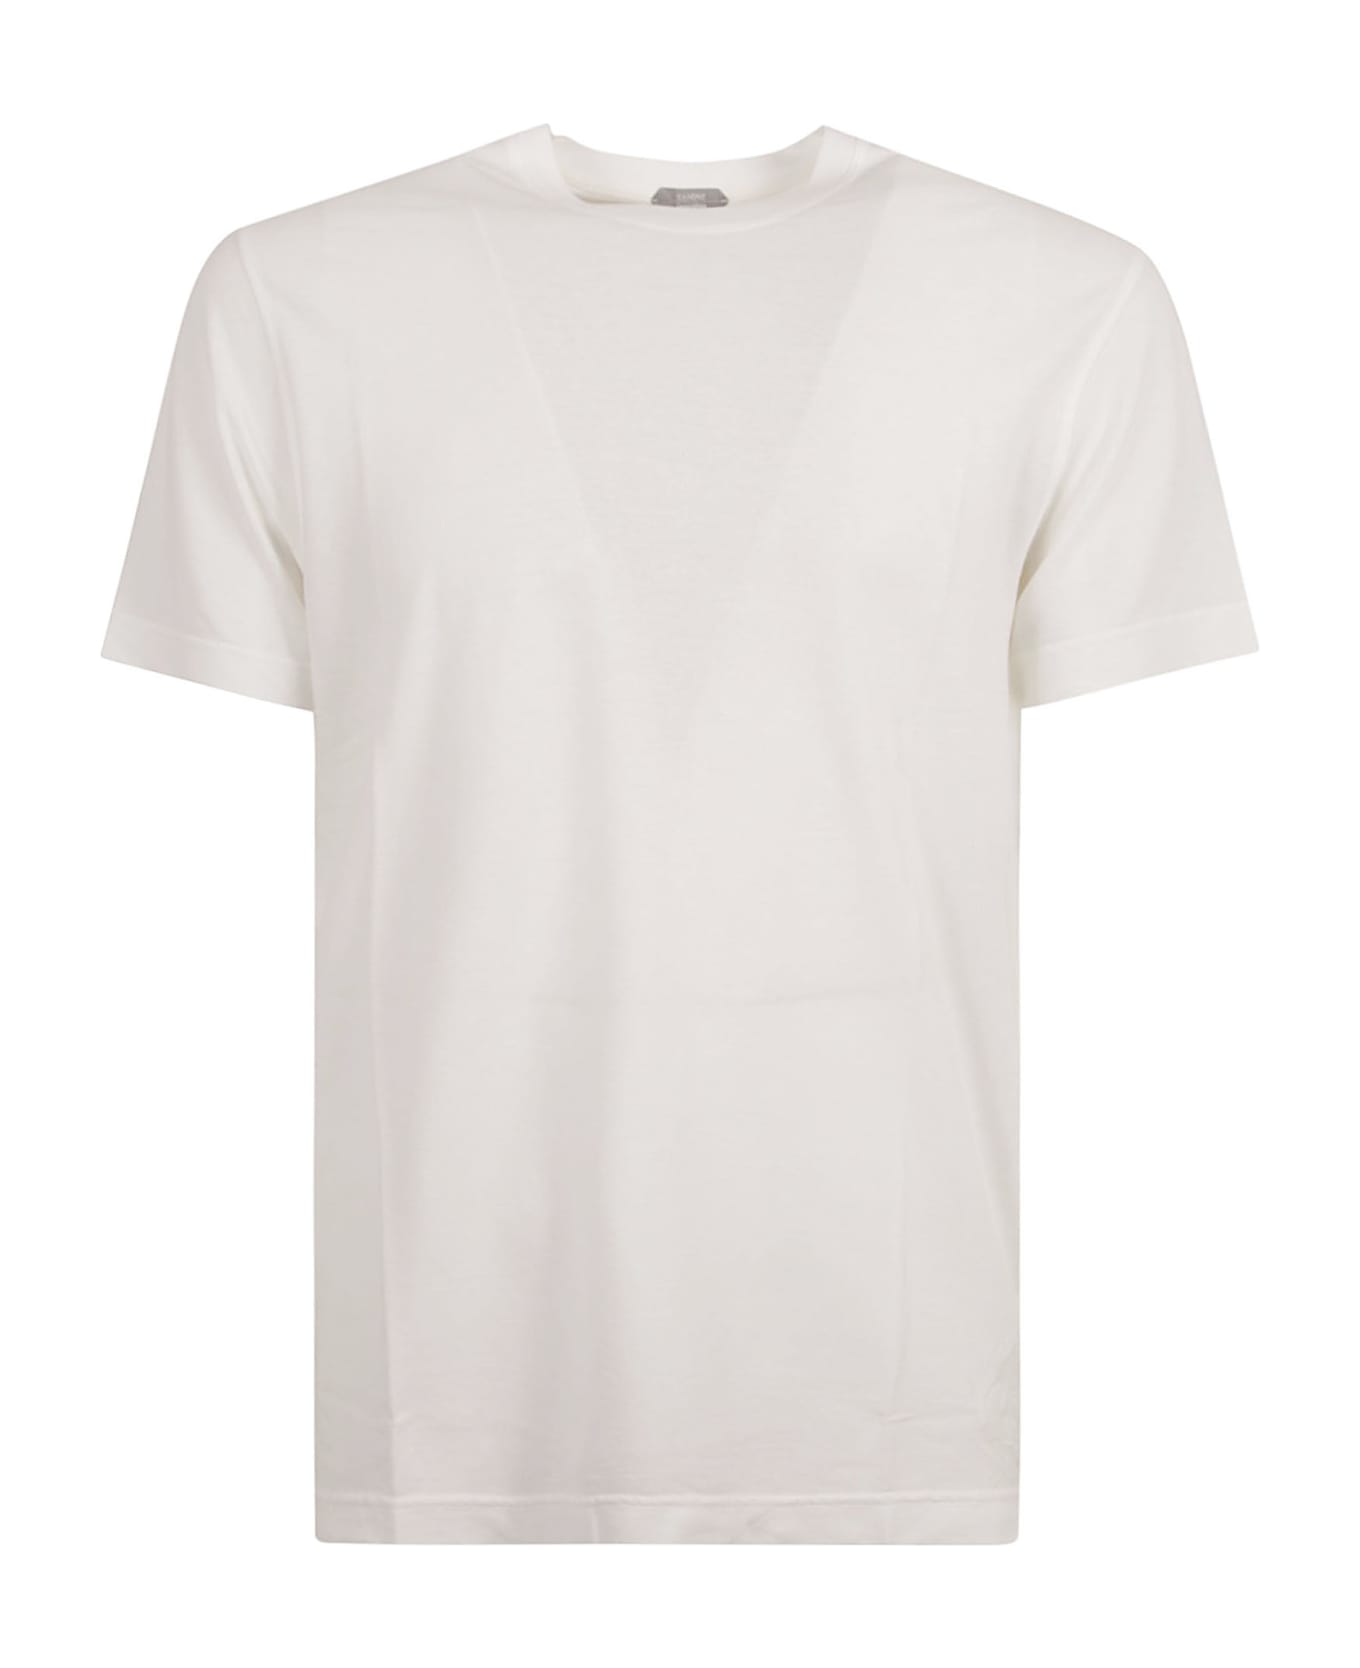 Zanone Round Neck Plain T-shirt - White Ottico